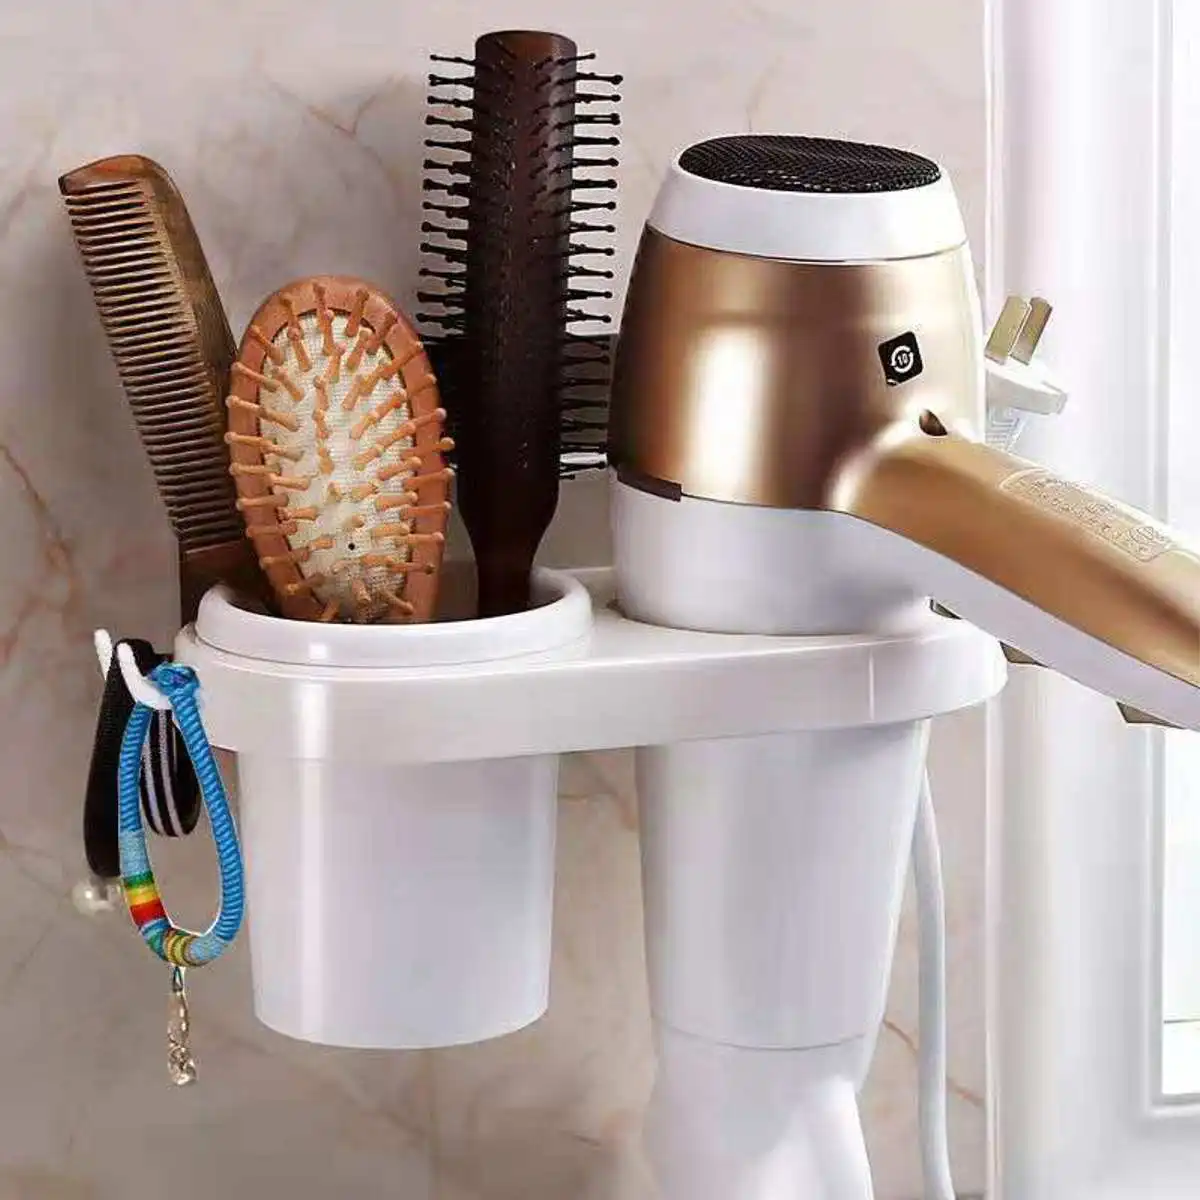 Сушилка для волос, держатель для гребня, органайзер для хранения в ванной, самоклеящаяся настенная подставка для выпрямителя шампуня